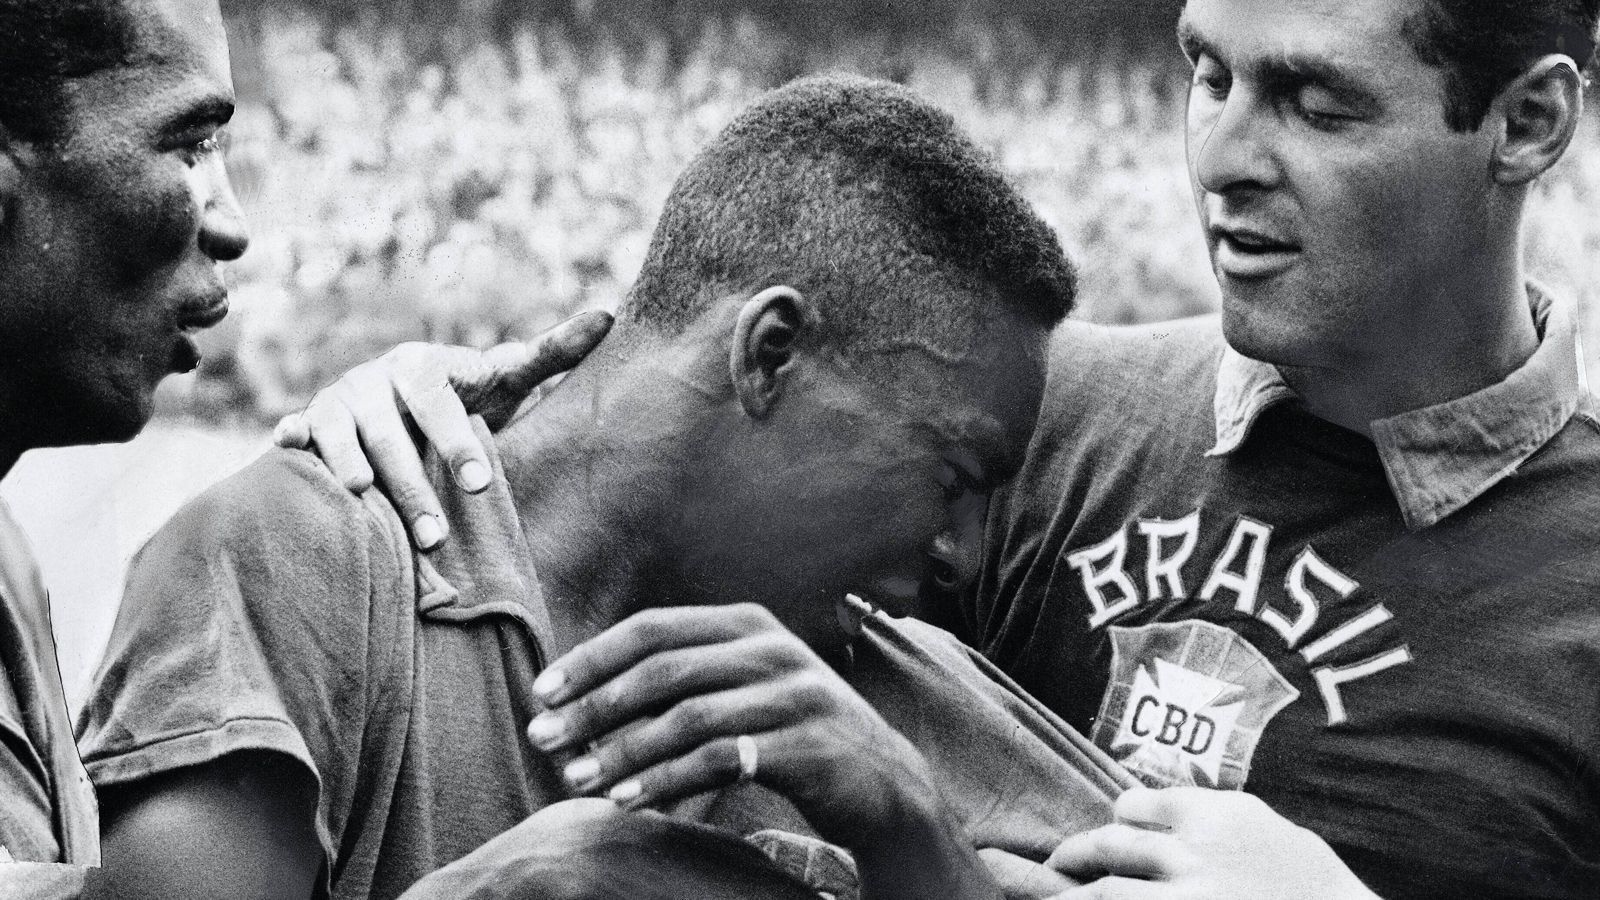 
                <strong>Pele: Die Karriere des "Königs des Fußballs"</strong><br>
                Nach dem Gewinn der ersten Weltmeisterschaft weinte Pele und musste von seinen Mitspielern beruhigt werden. Der Spitzname "O Rei" - "der König", war geboren. Im Jahr 1958 wurde Pele, der oft auch als "König des Fußballs" bezeichnet wird, mit dem FC Santos auch erstmals Meister in Brasilien.
              